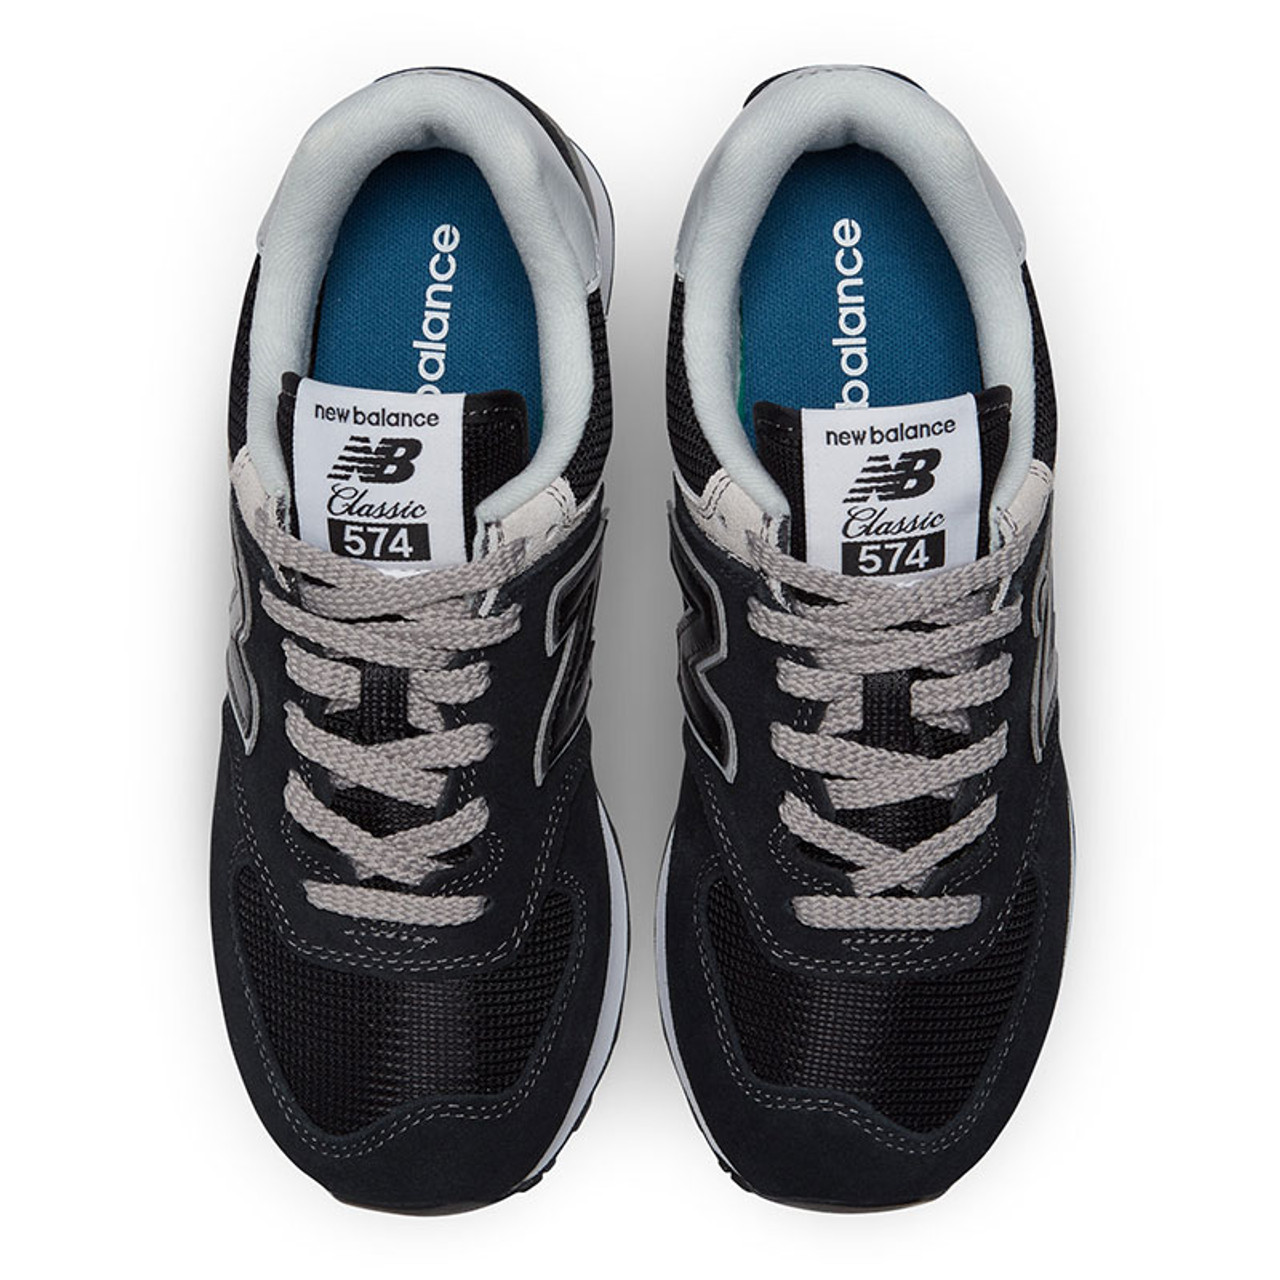 New Balance 574 Sneaker Black/ White (Women's)